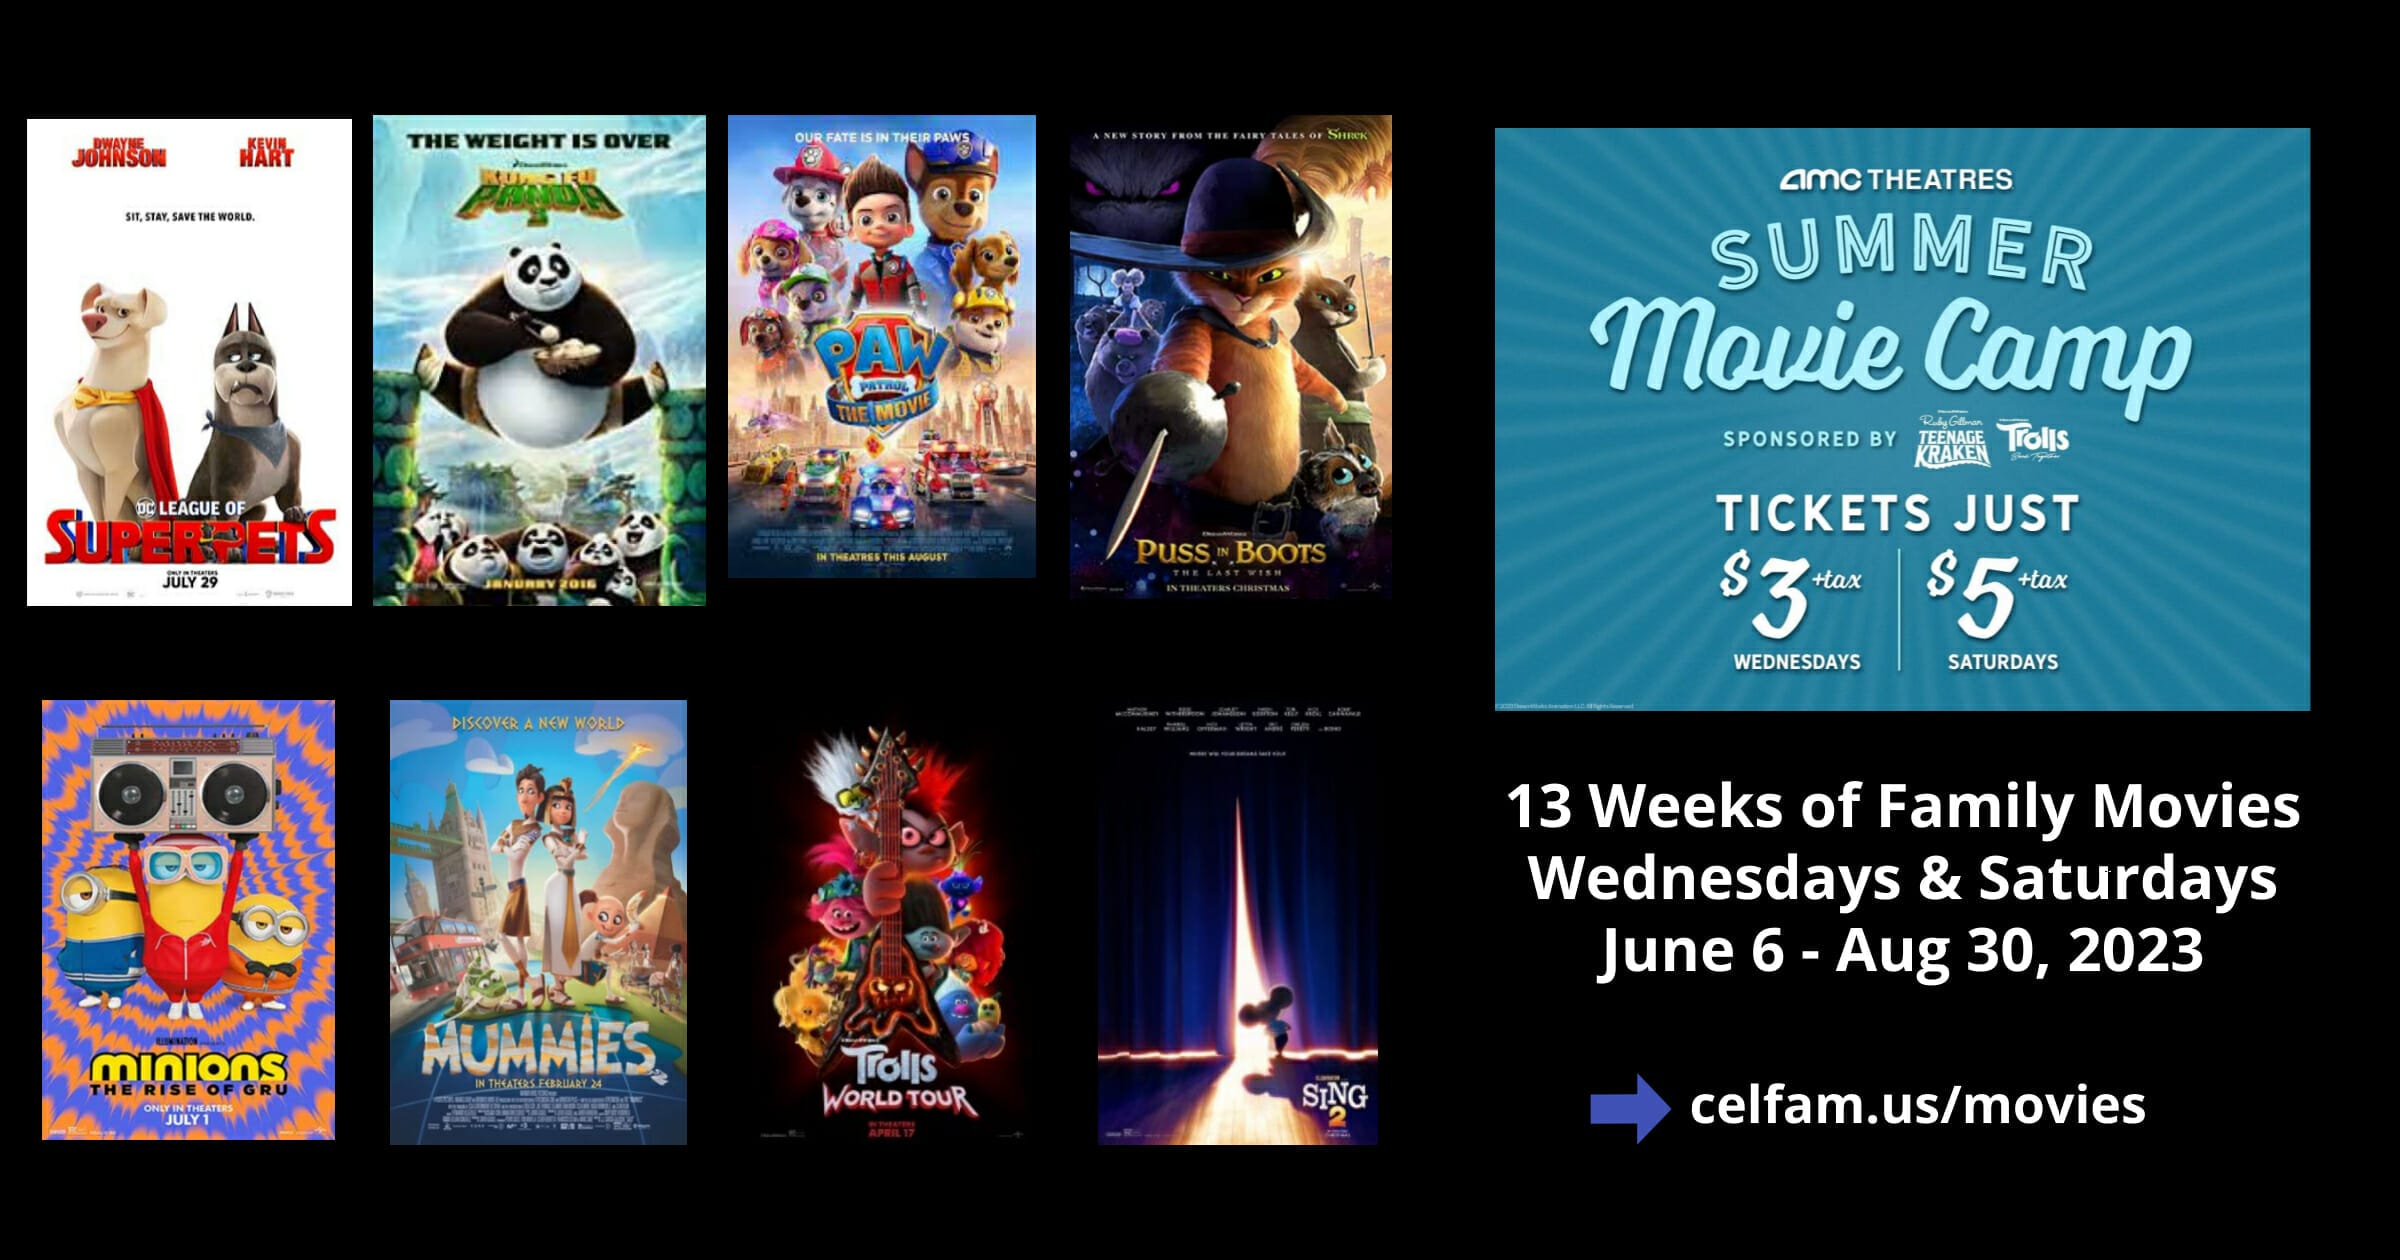 13 Weeks of Family Movies Wednesdays & Saturdays June 6 - Aug 30, 2023